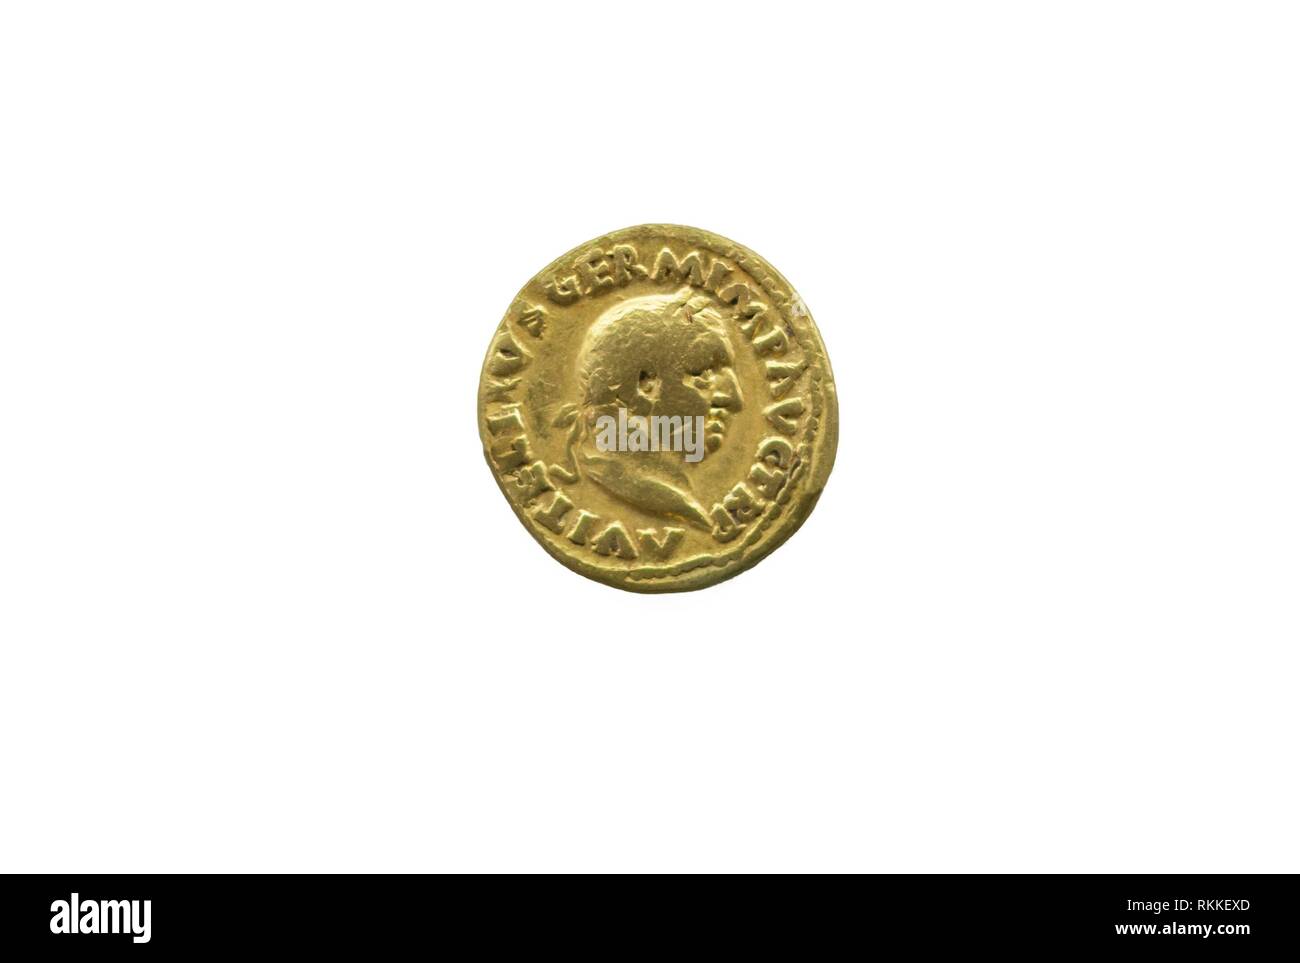 Moneda de oro representando el Emperador Vitellius. Aislado sobre blanco. Foto de stock